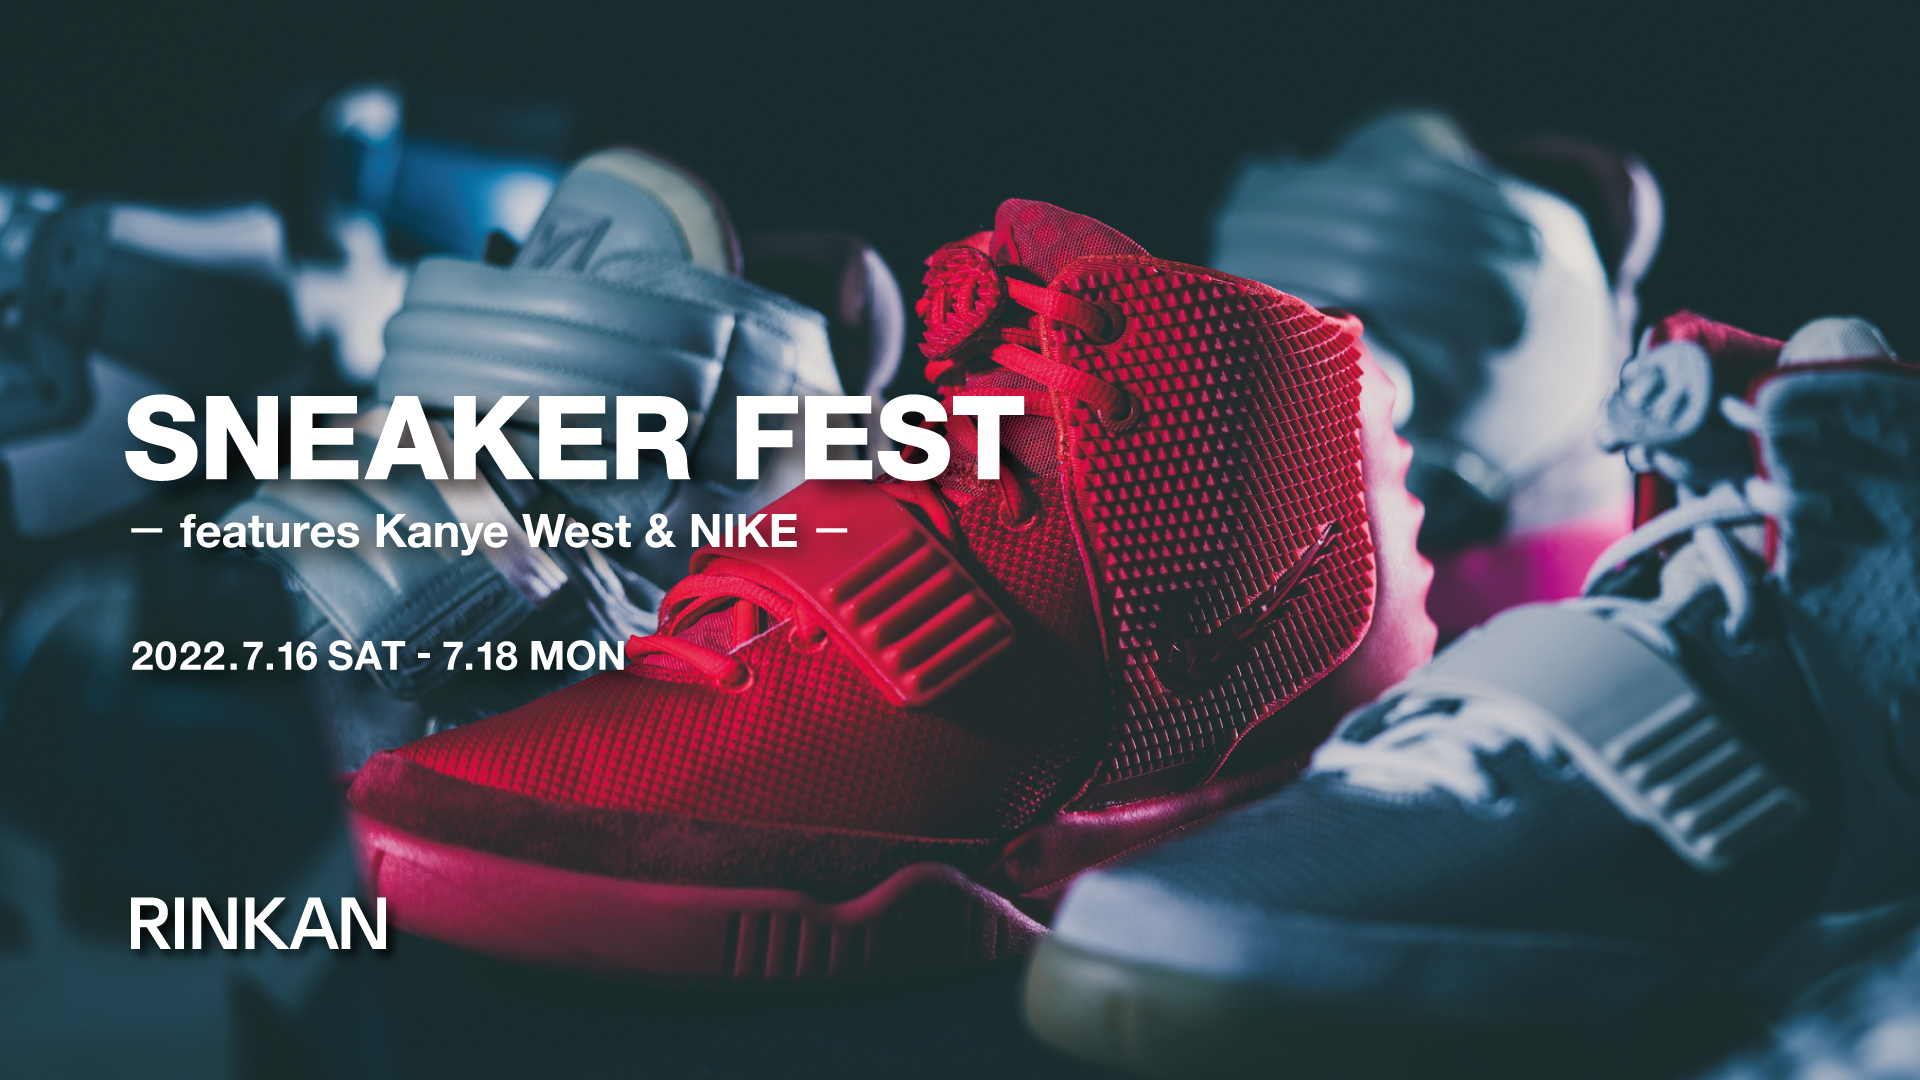 7月16日～7月18日 期間限定開催 “RINKAN SHIBUYA” 展示販売イベント “SNEAKER FEST – features Kanye West & NIKE -“